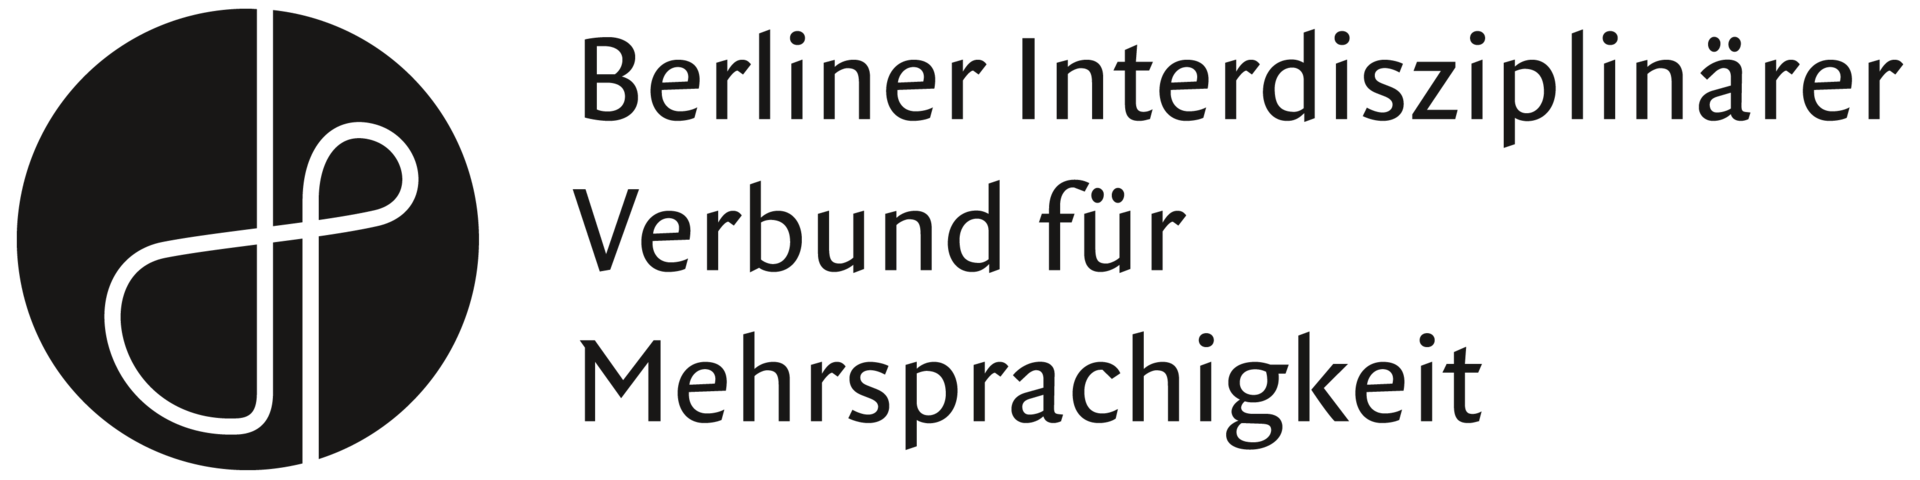 Berliner Interdisziplinärer Verbund für Mehrsprachigkeit.